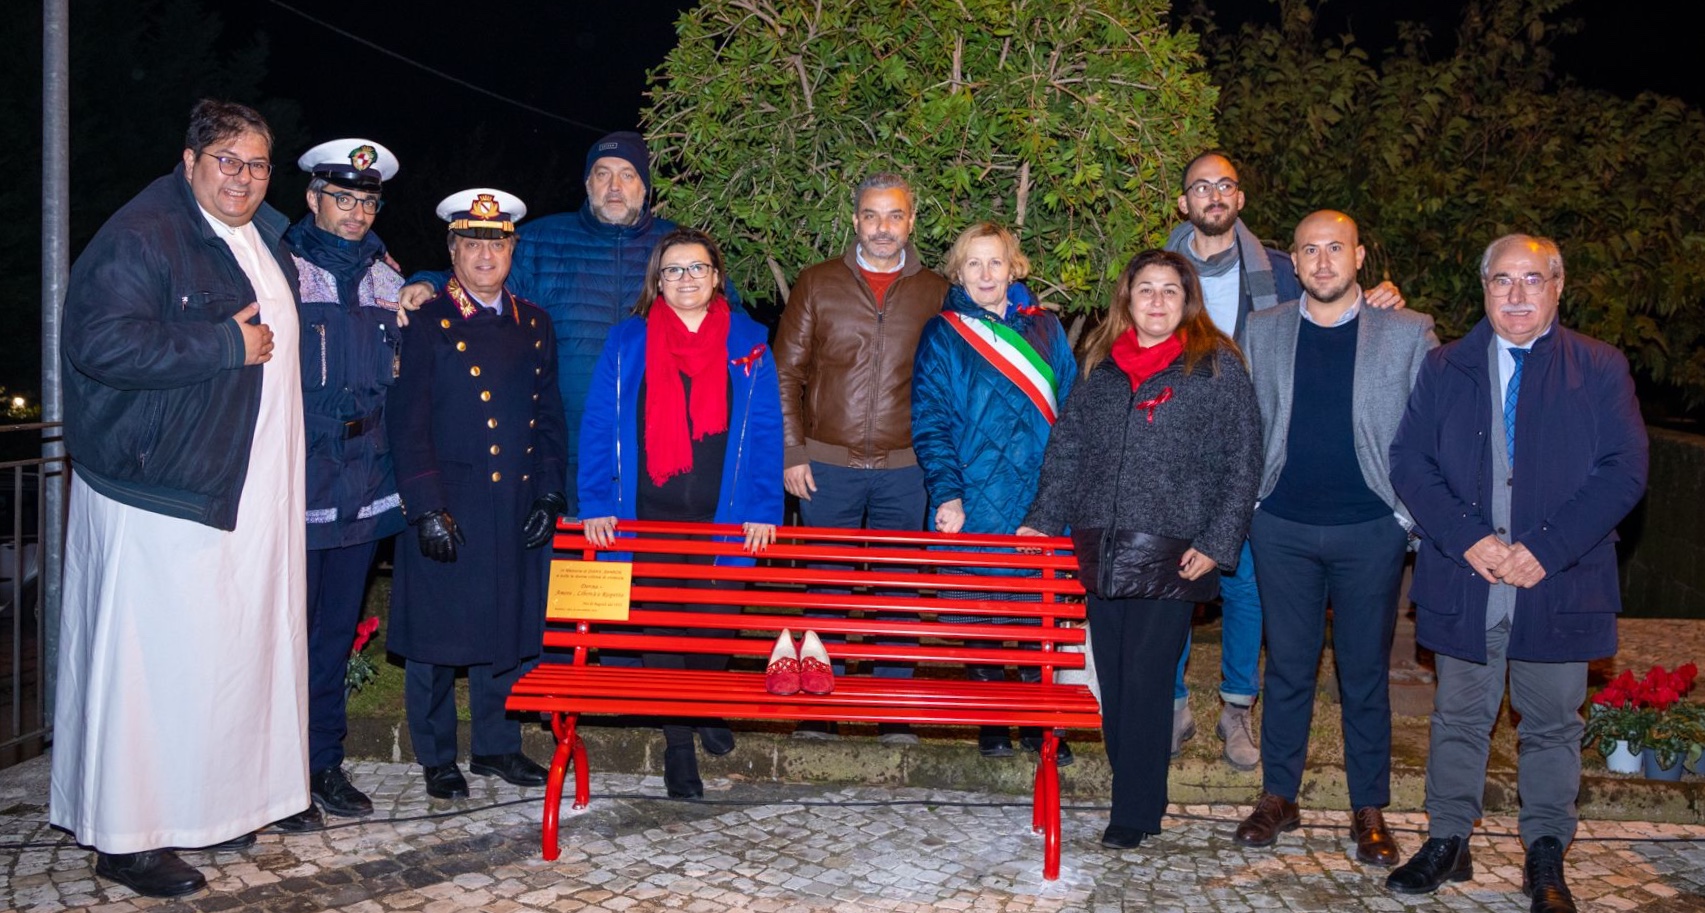 Sant’Agata De Goti| Il gruppo “Noi di Bagnoli 72” ha installato una panchina rossa in ricordo di Diana e Sharon